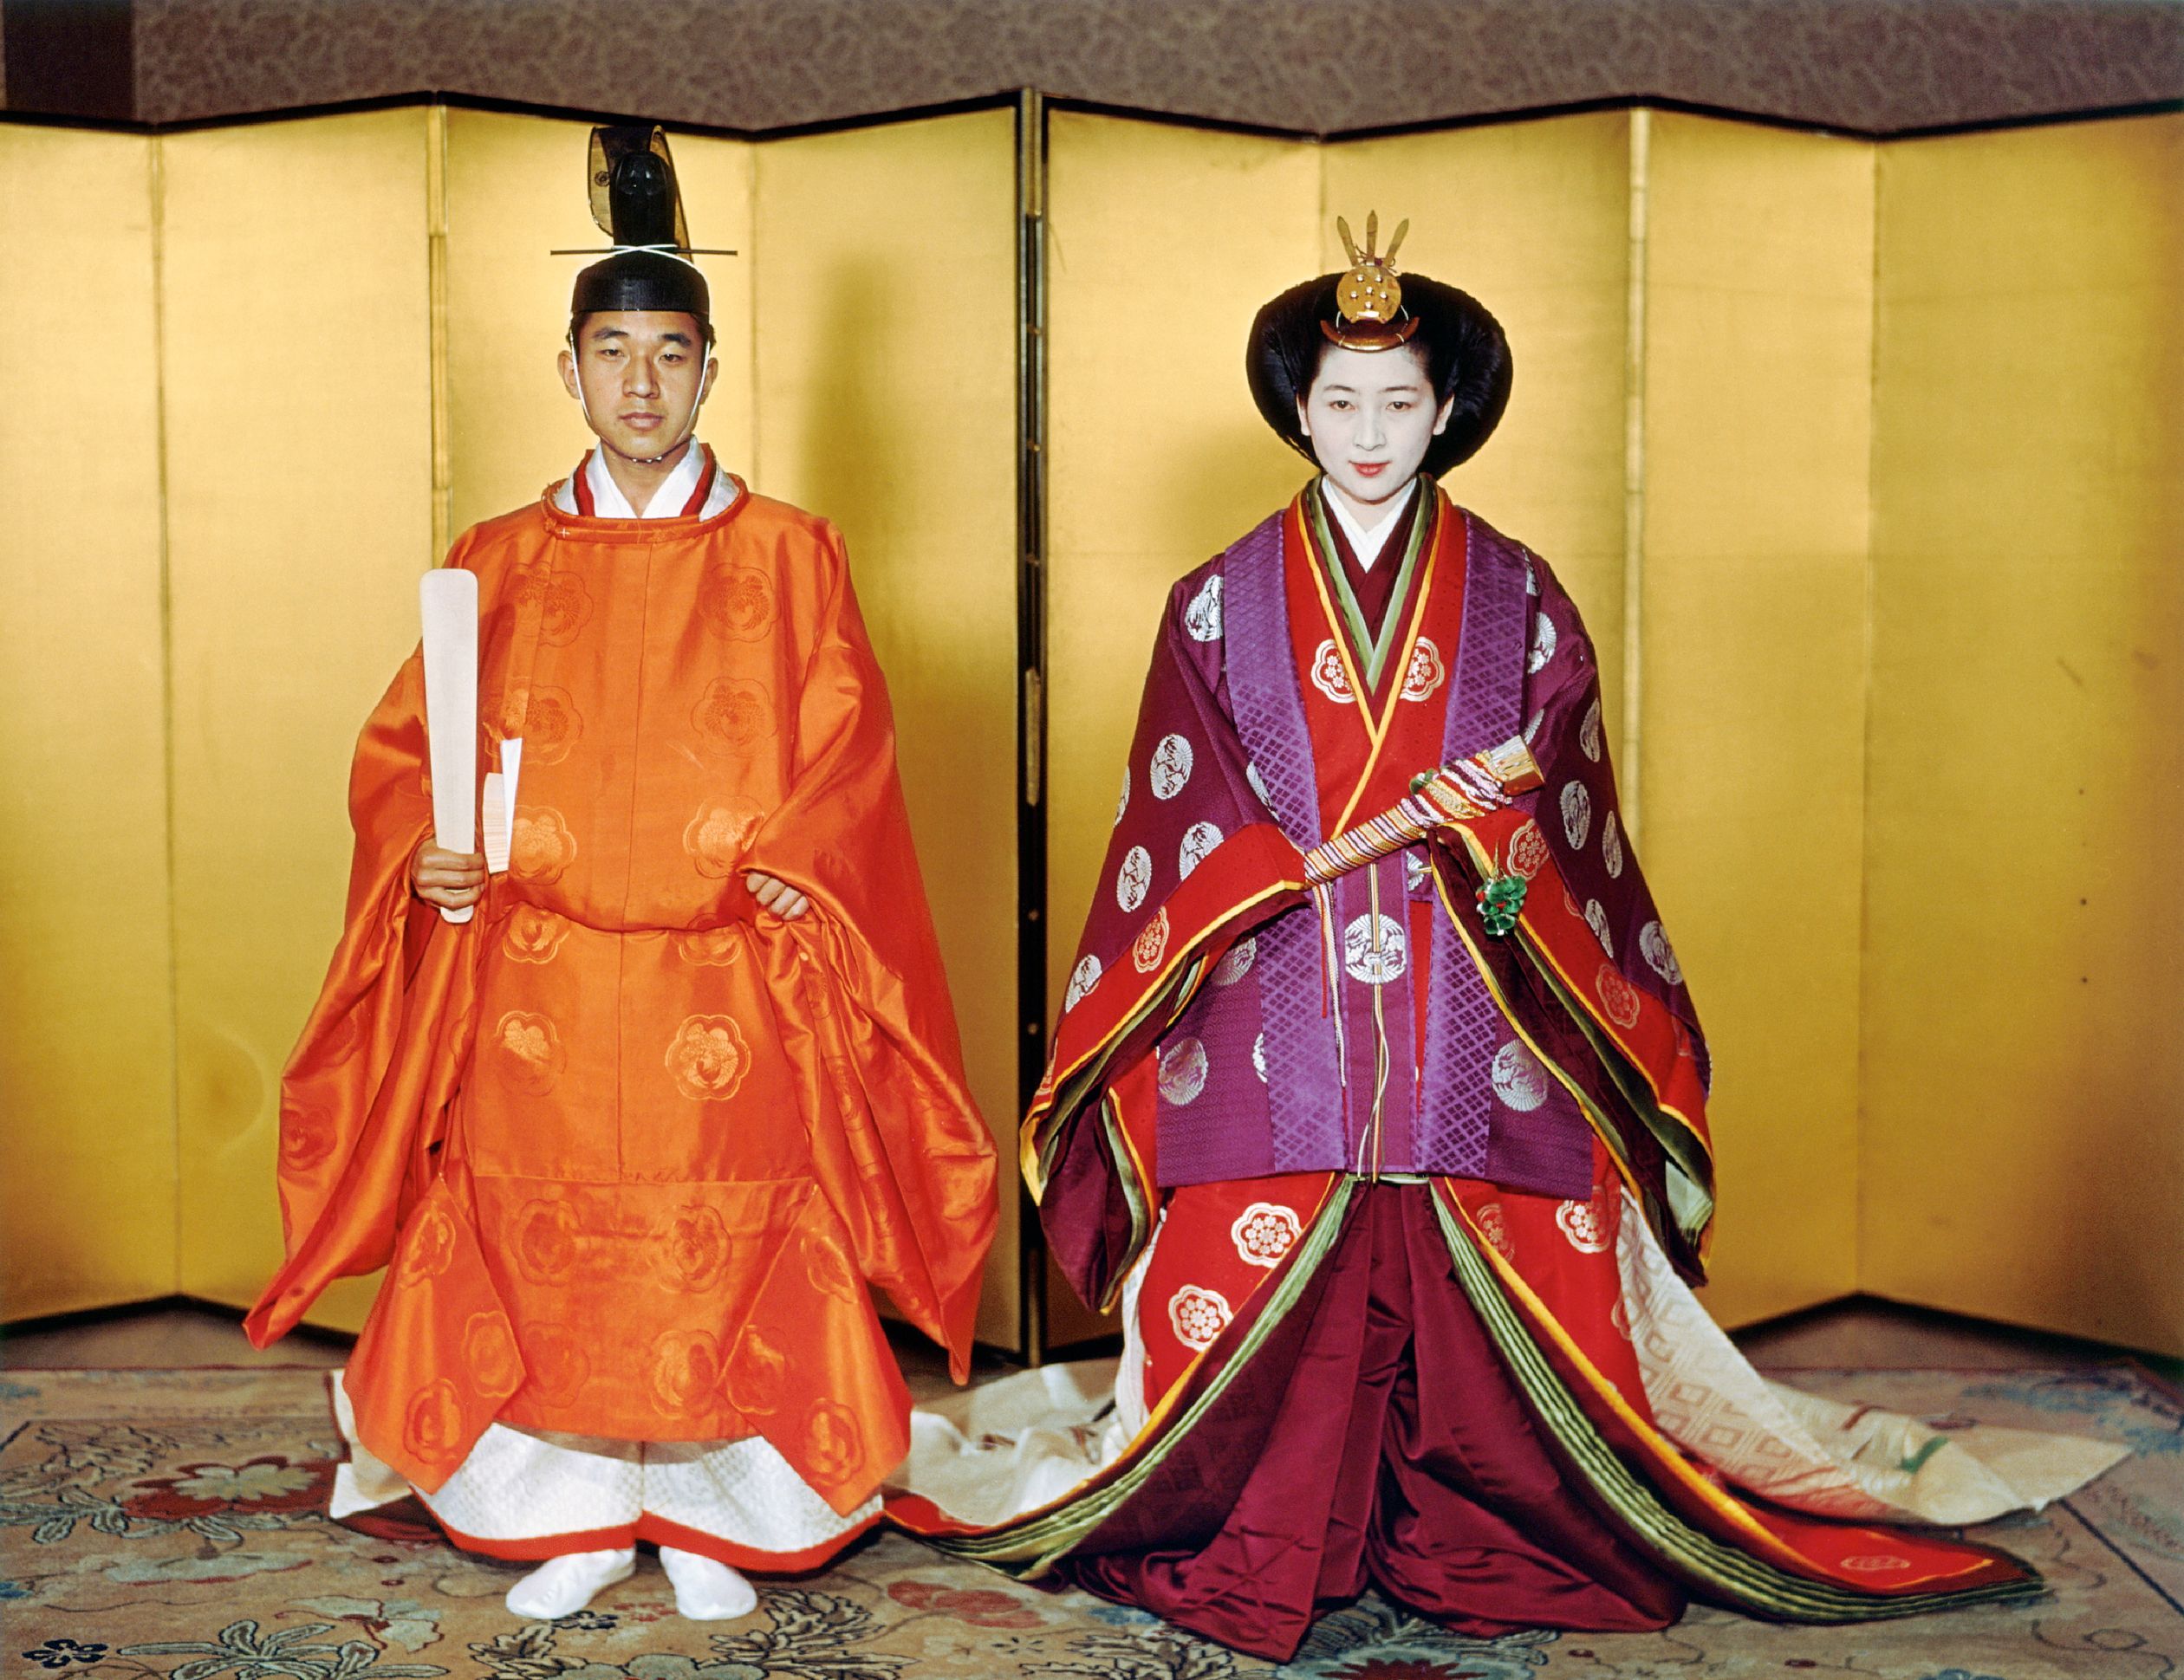 Crown_Prince_Akihito_Michiko_ceremonial_wedding_attire_1959.jpg